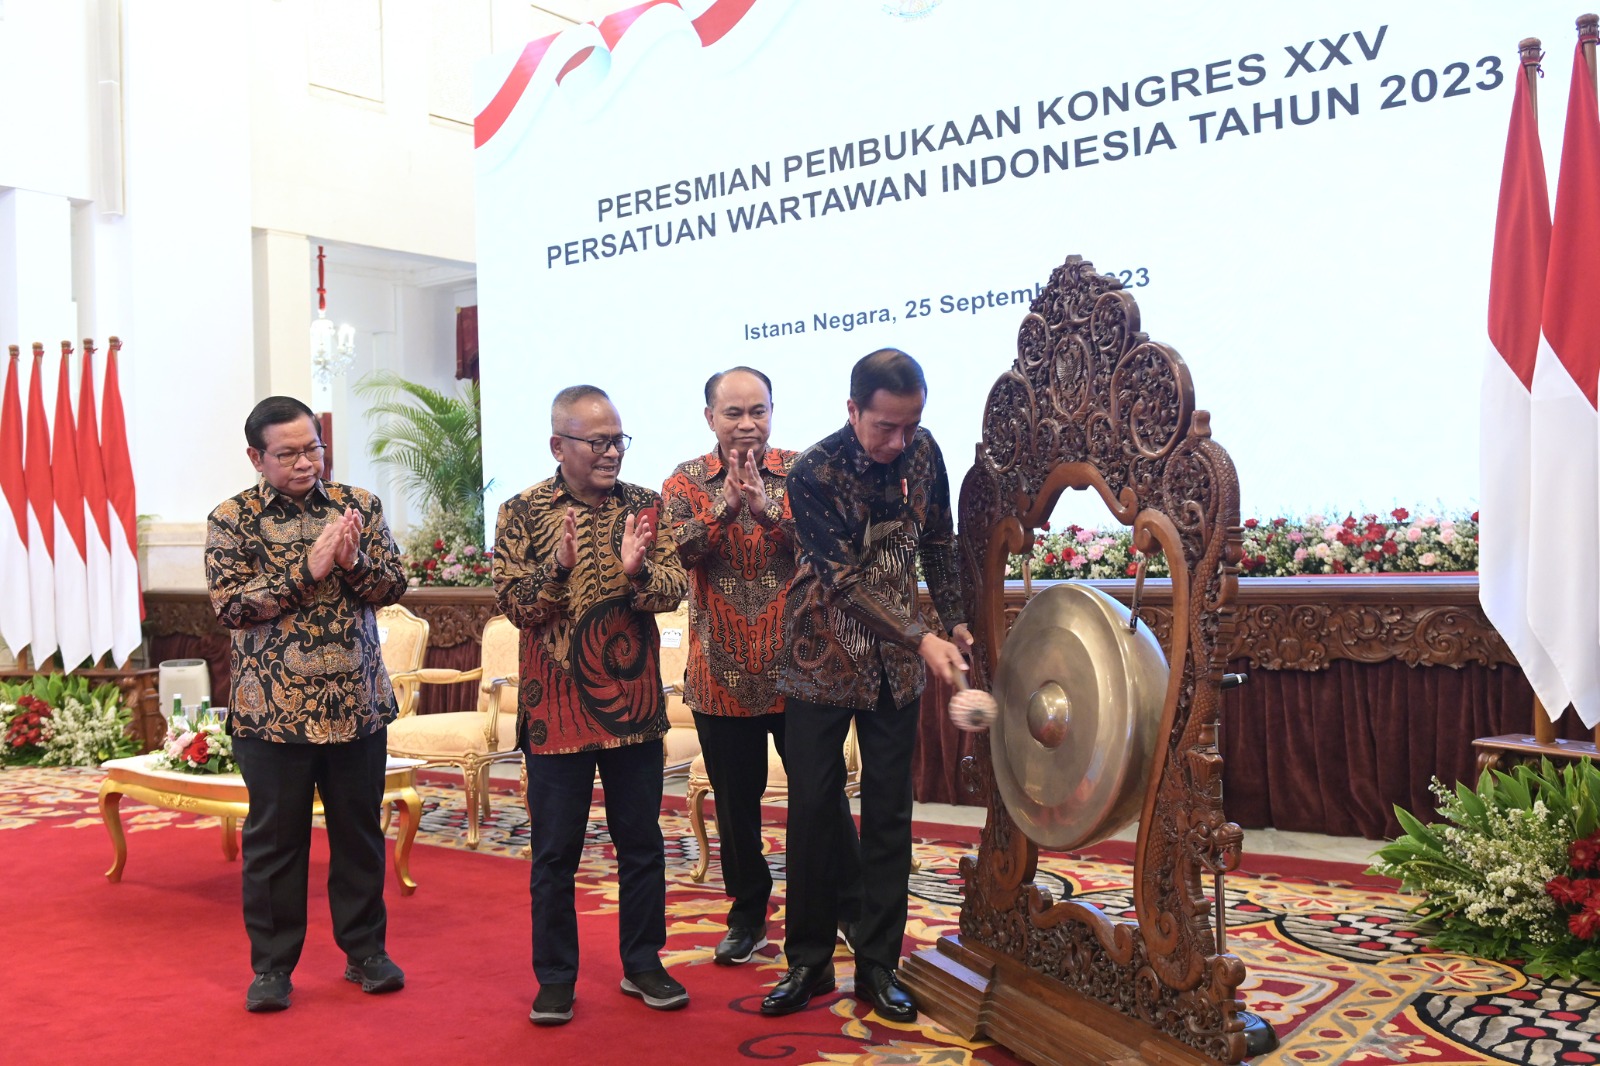 Presiden Jokowi didampingi oleh Menkominfo Budi Arie Setiadi, Seskab Pramono Anung, dan Ketua Umum PWI Atal S. Depari saat membuka Kongres XXV PWI, di Istana Negara, Jakarta, Senin (25/09/2023). Humas Setkab/Oji.